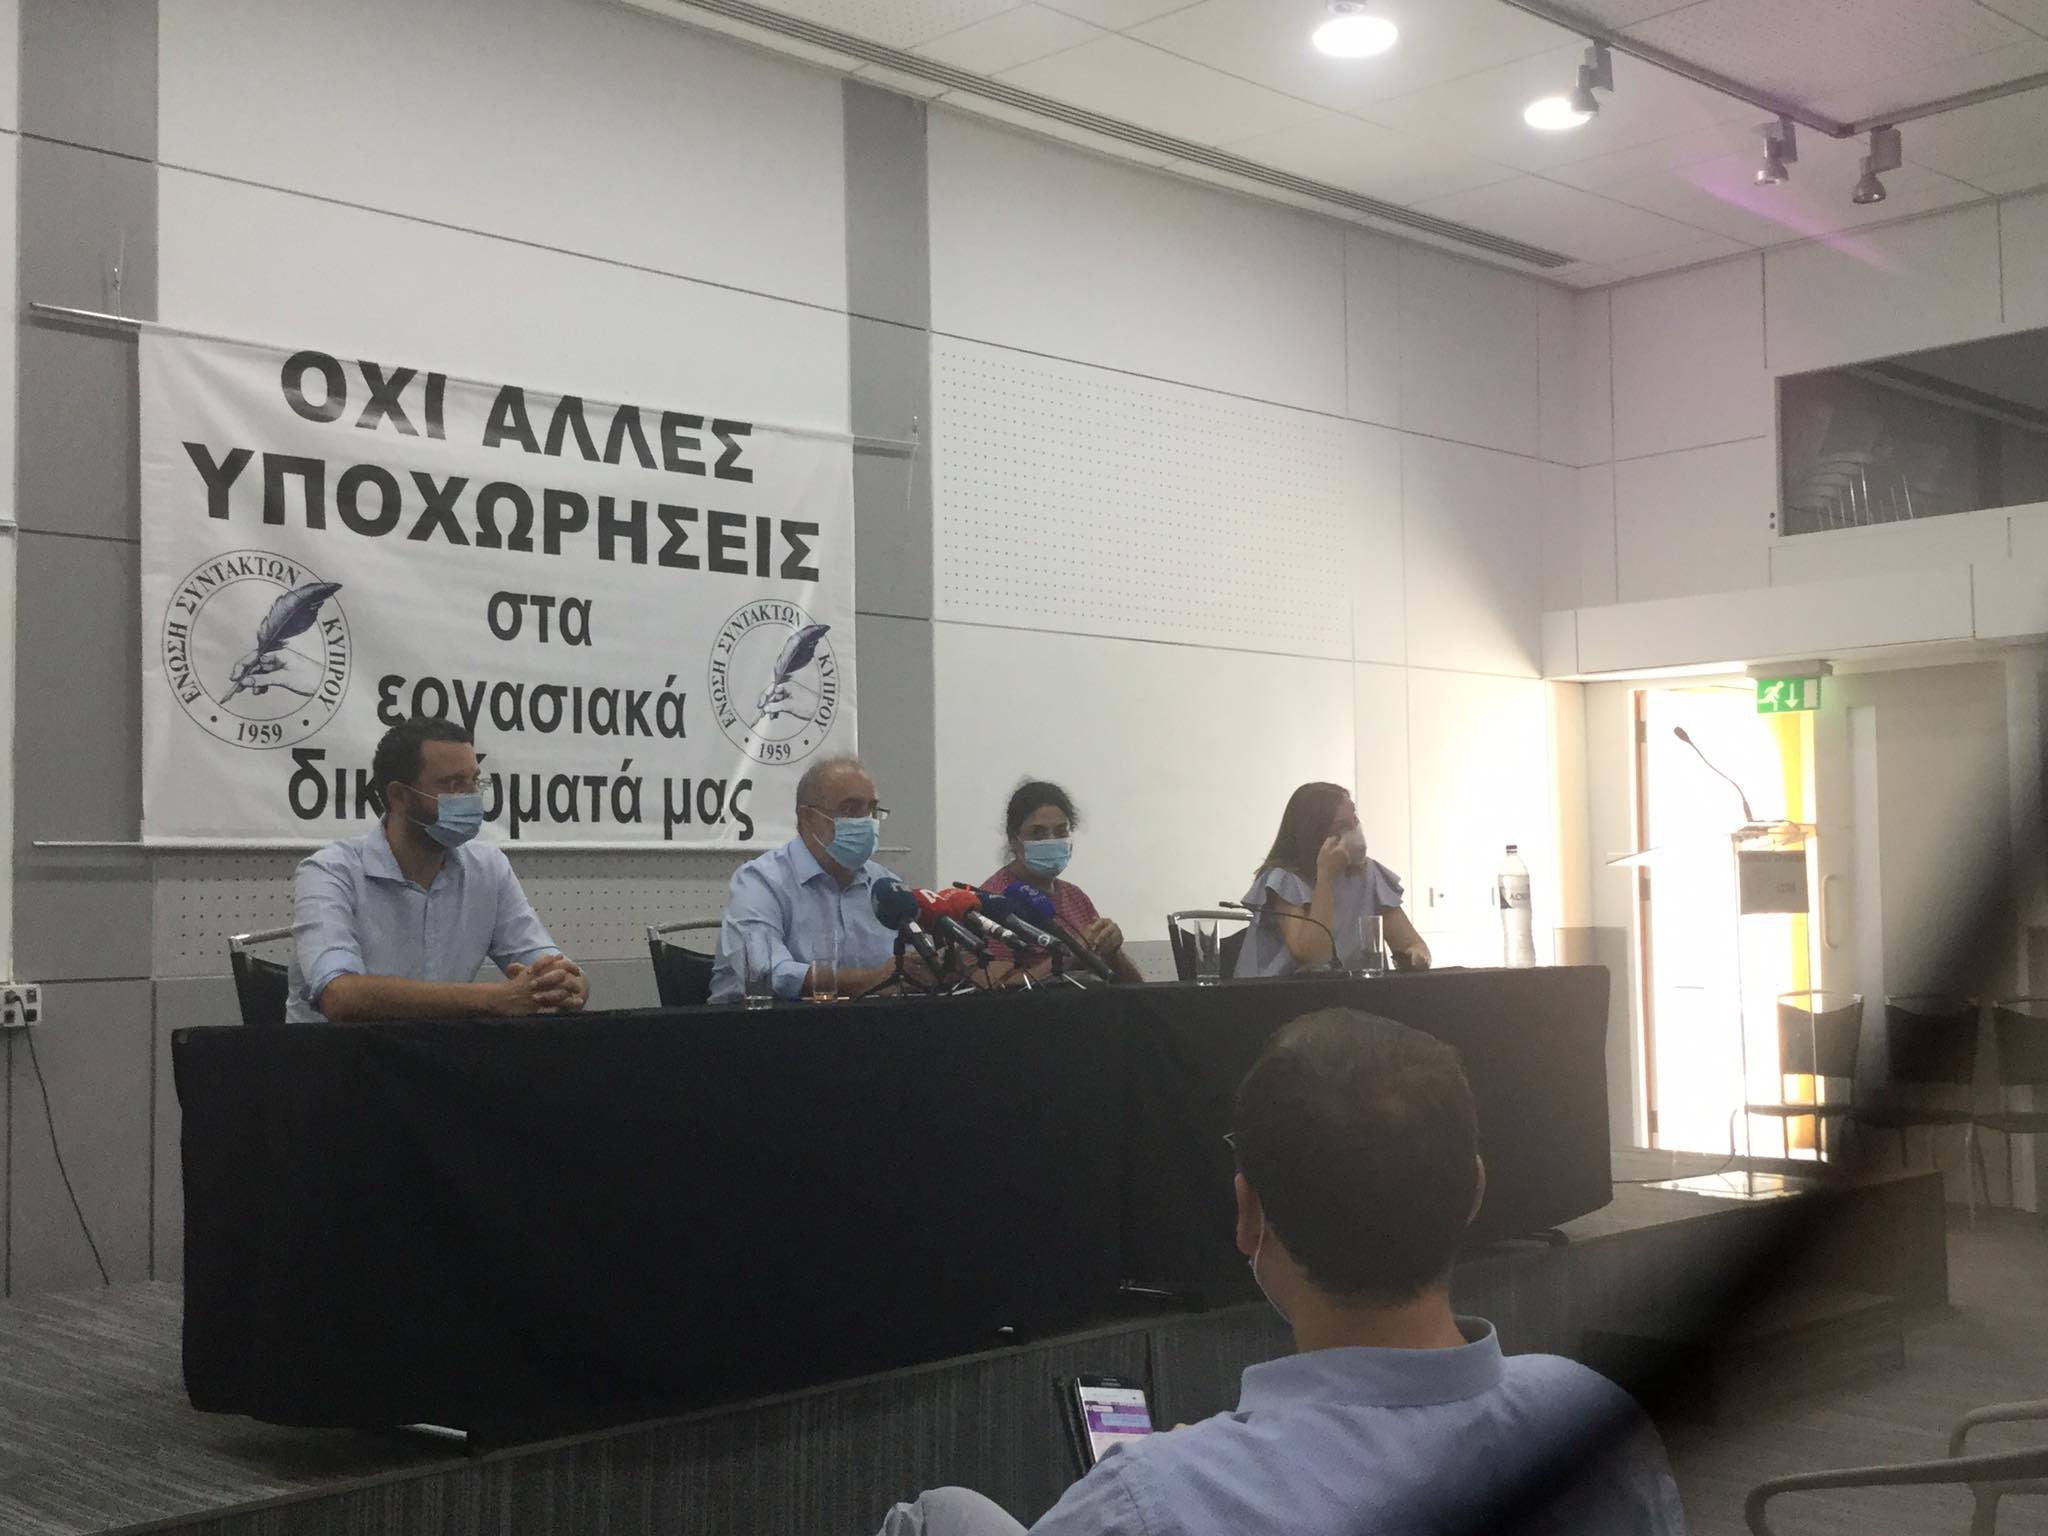 Έξω από πολιτικά παιχνίδια η Ένωση Συντακτών Κύπρου